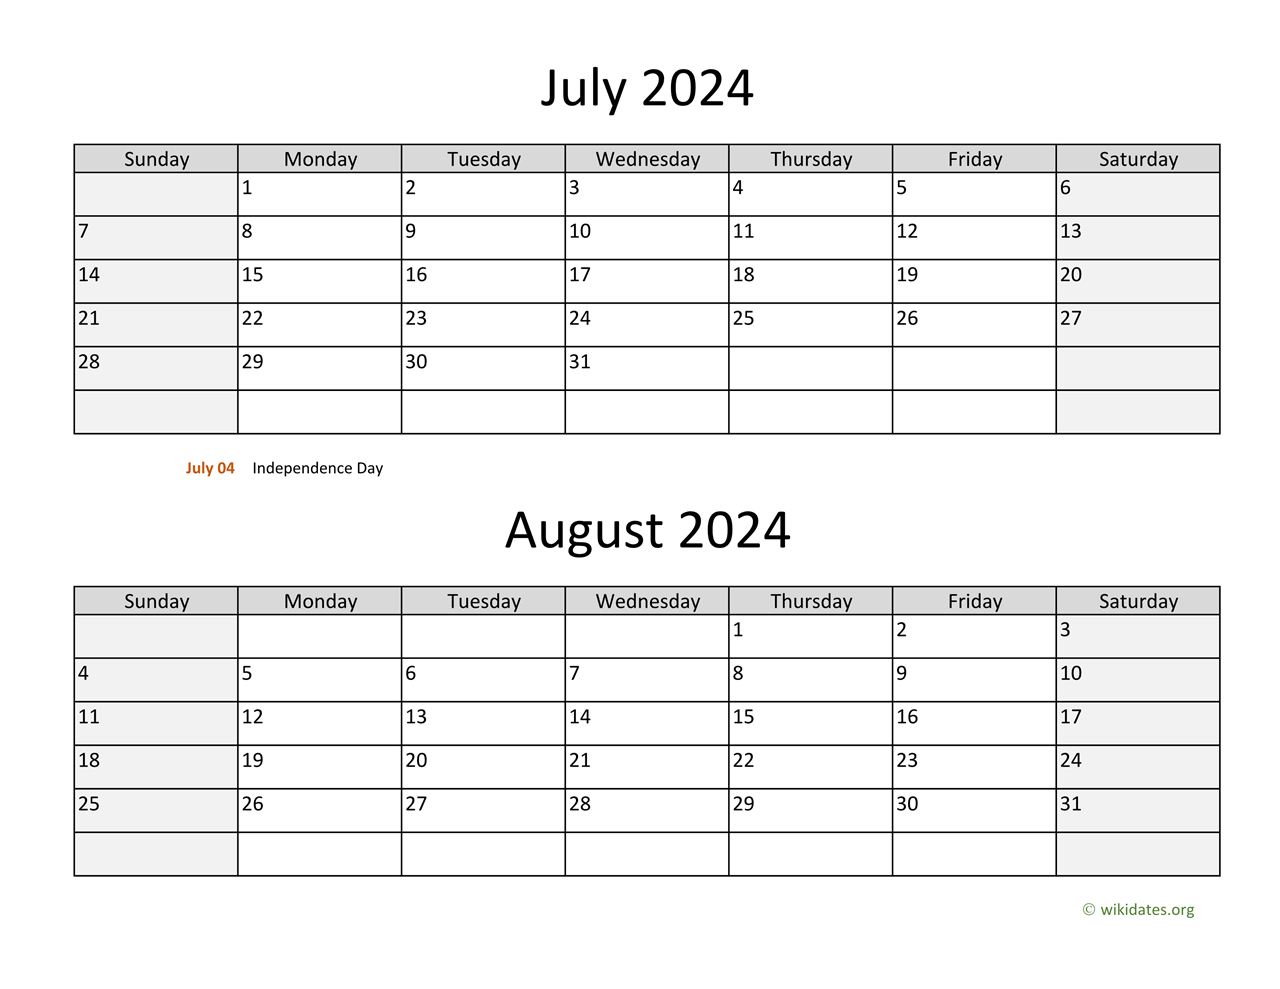 june-2024-calendar-printable